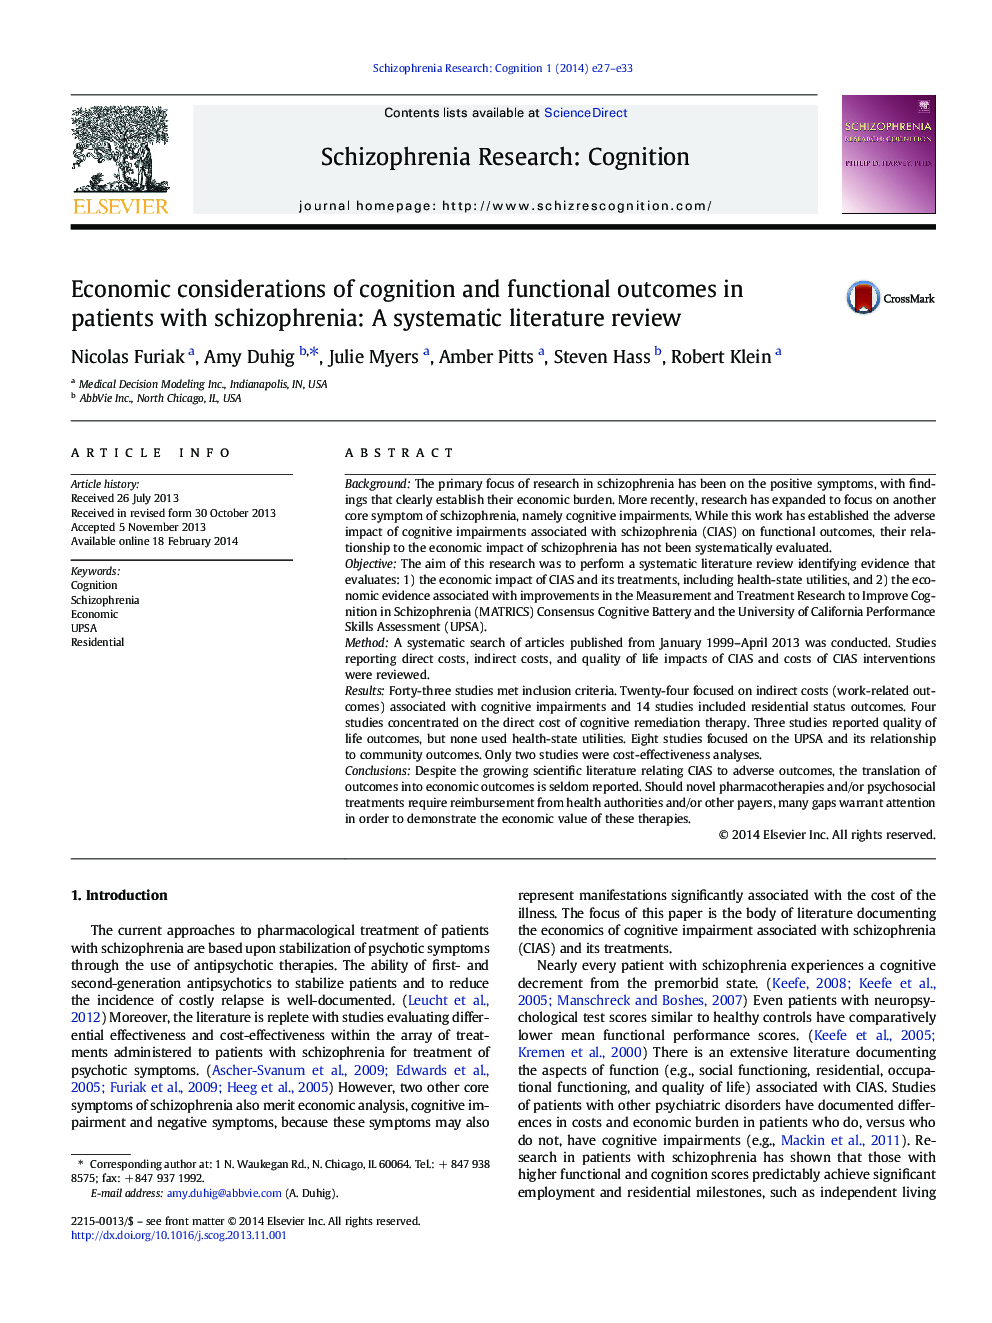 ملاحظات اقتصادی شناخت و نتایج عملکردی در بیماران مبتلا به اسکیزوفرنی: یک بررسی ادبی سیستماتیک 